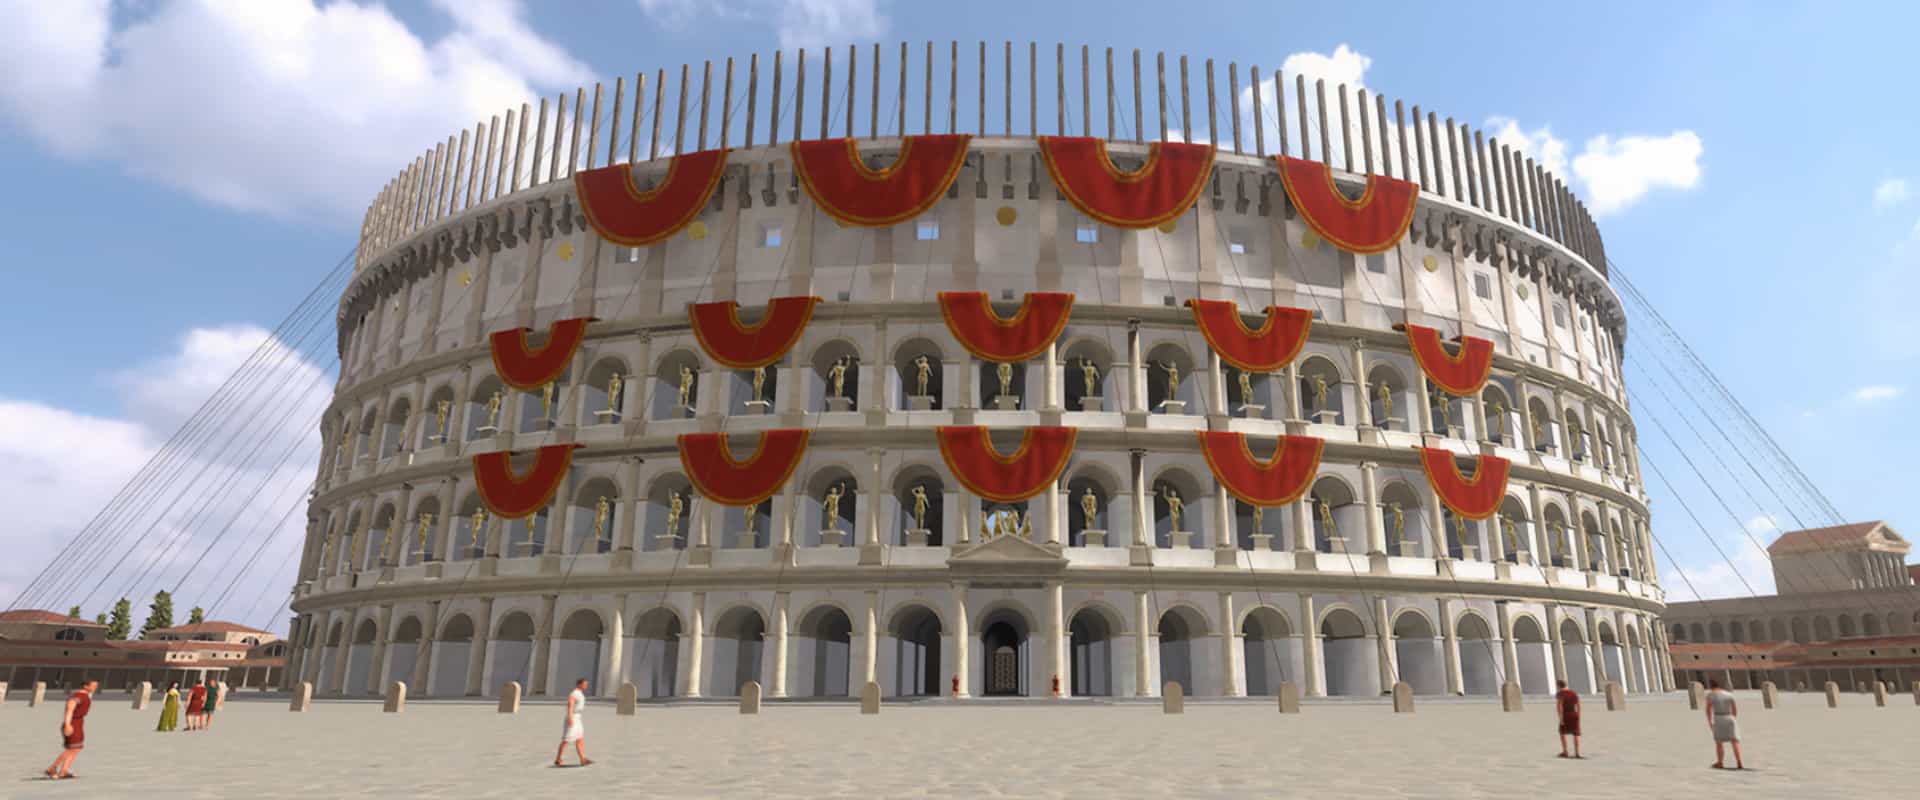 virtual tour of roman colosseum